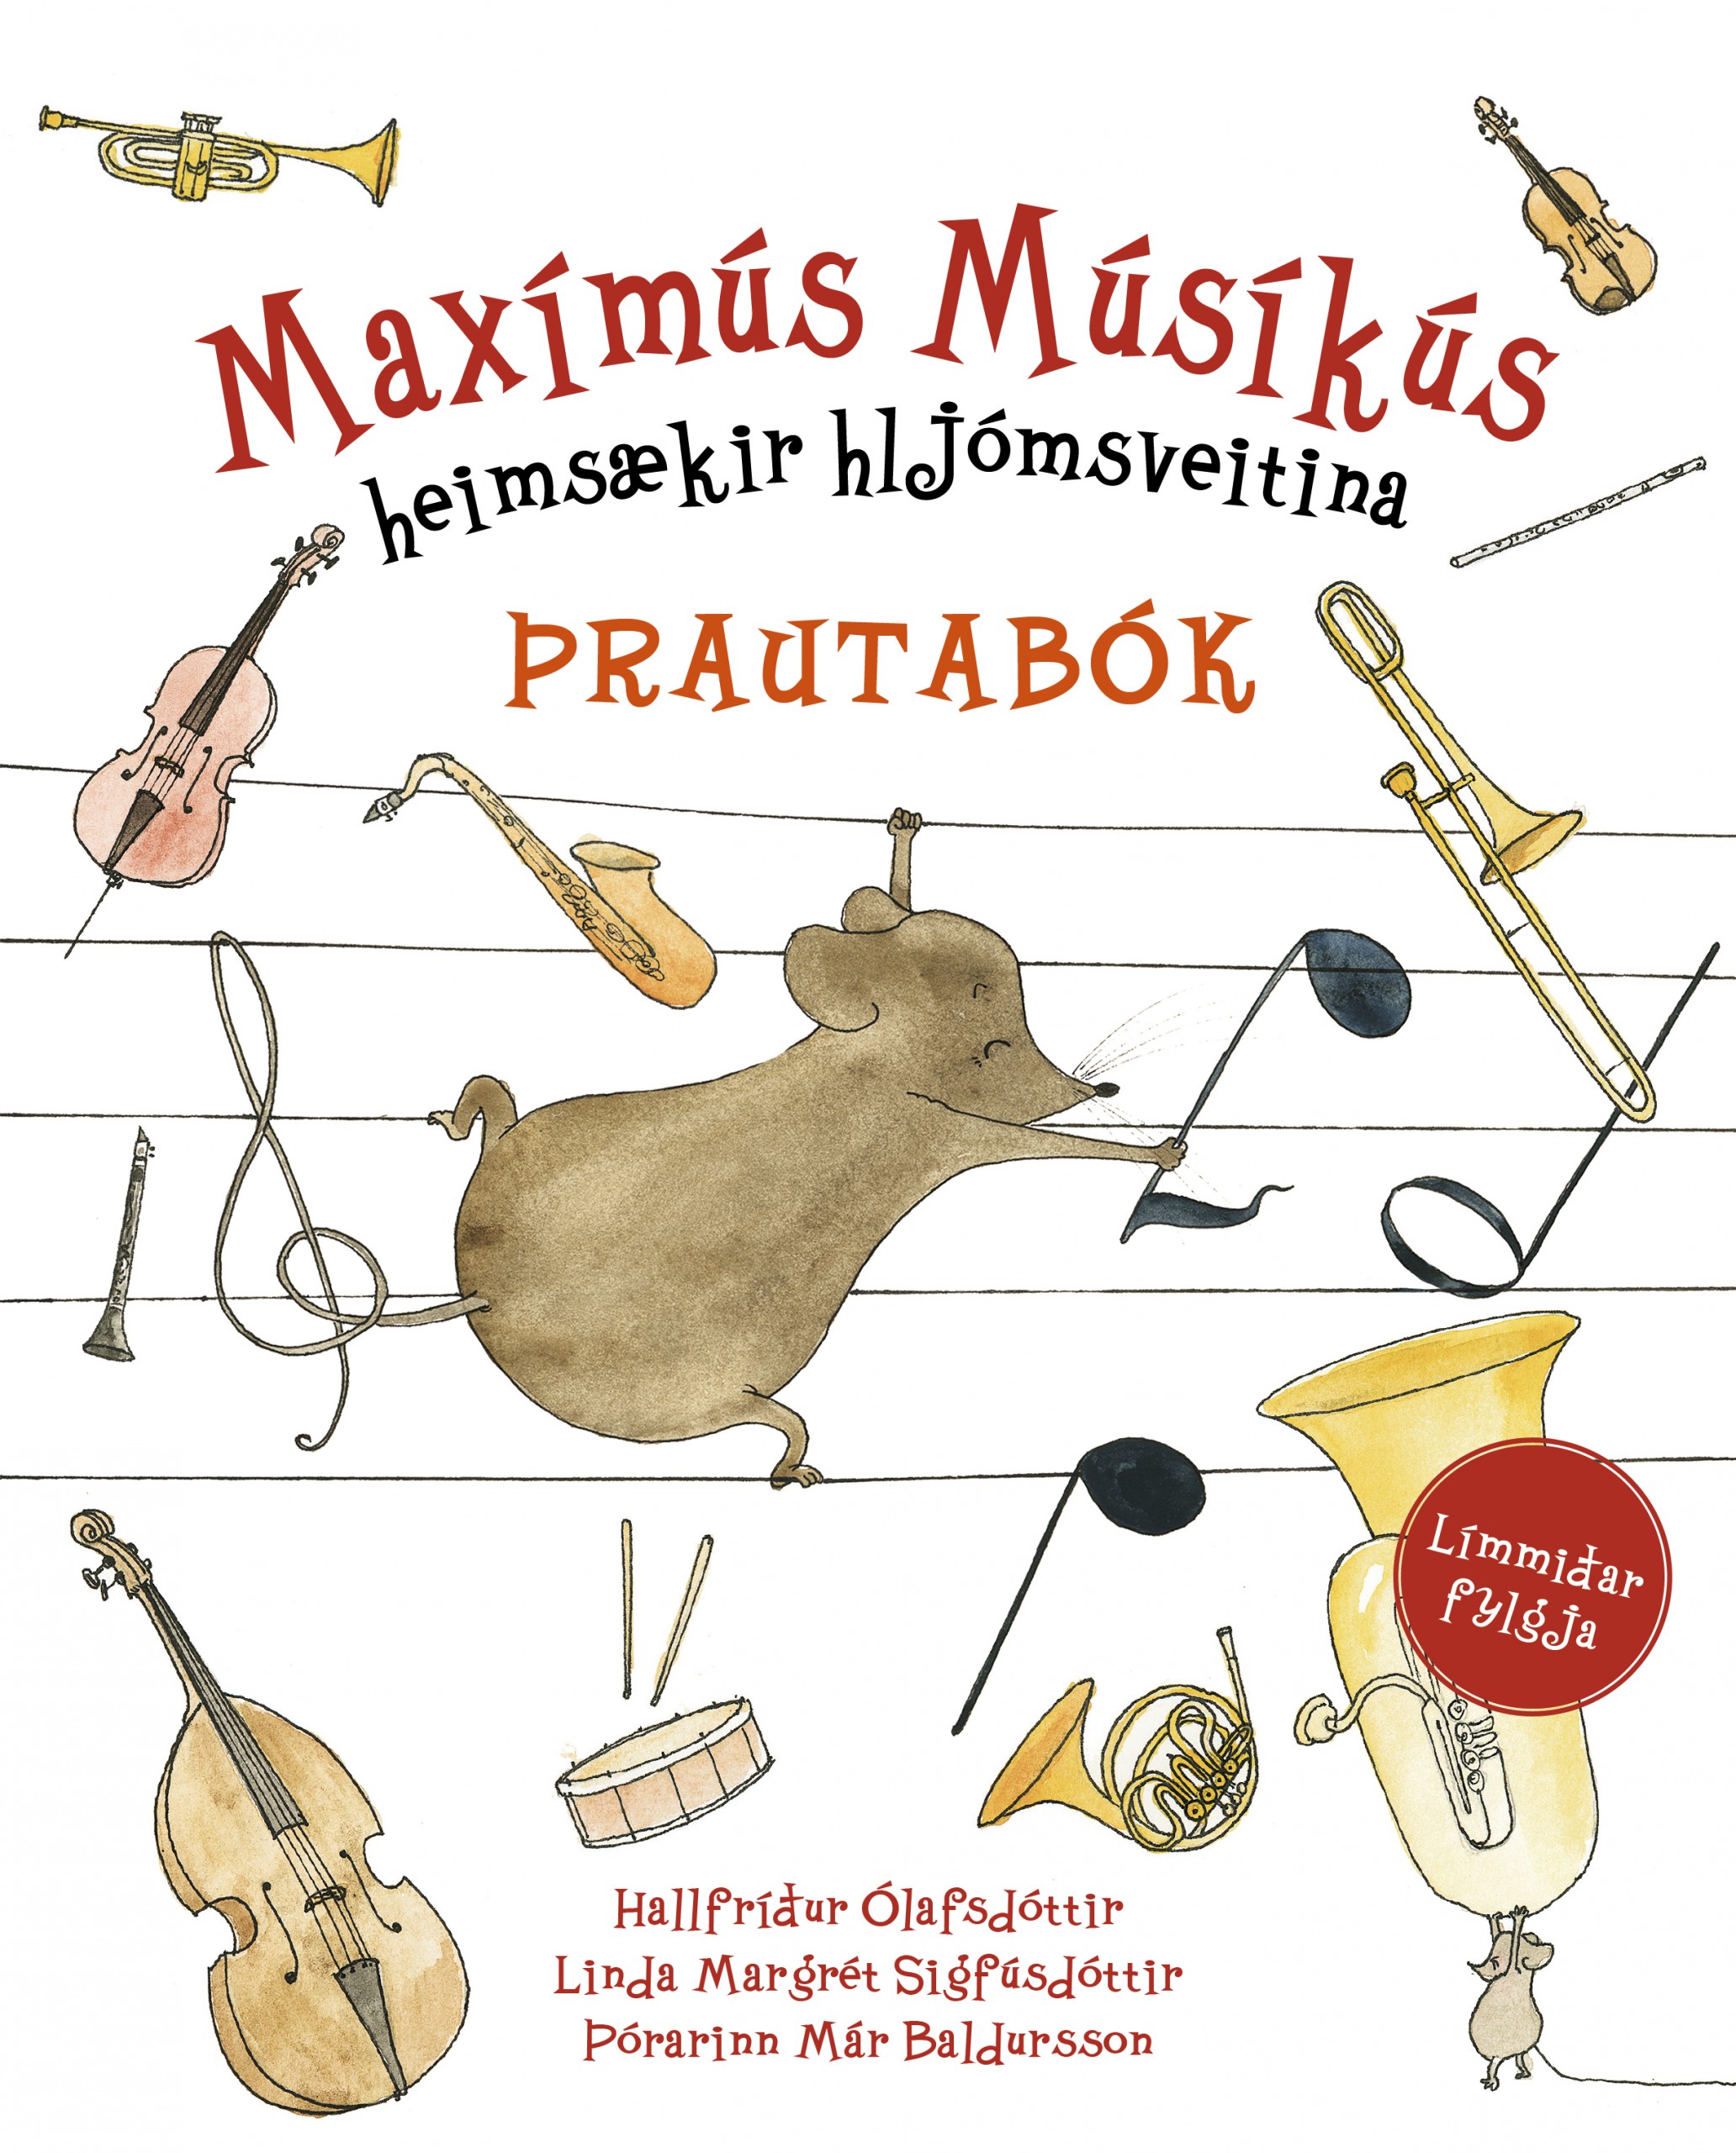 Maximus Musicus Visits the Music School (2010)